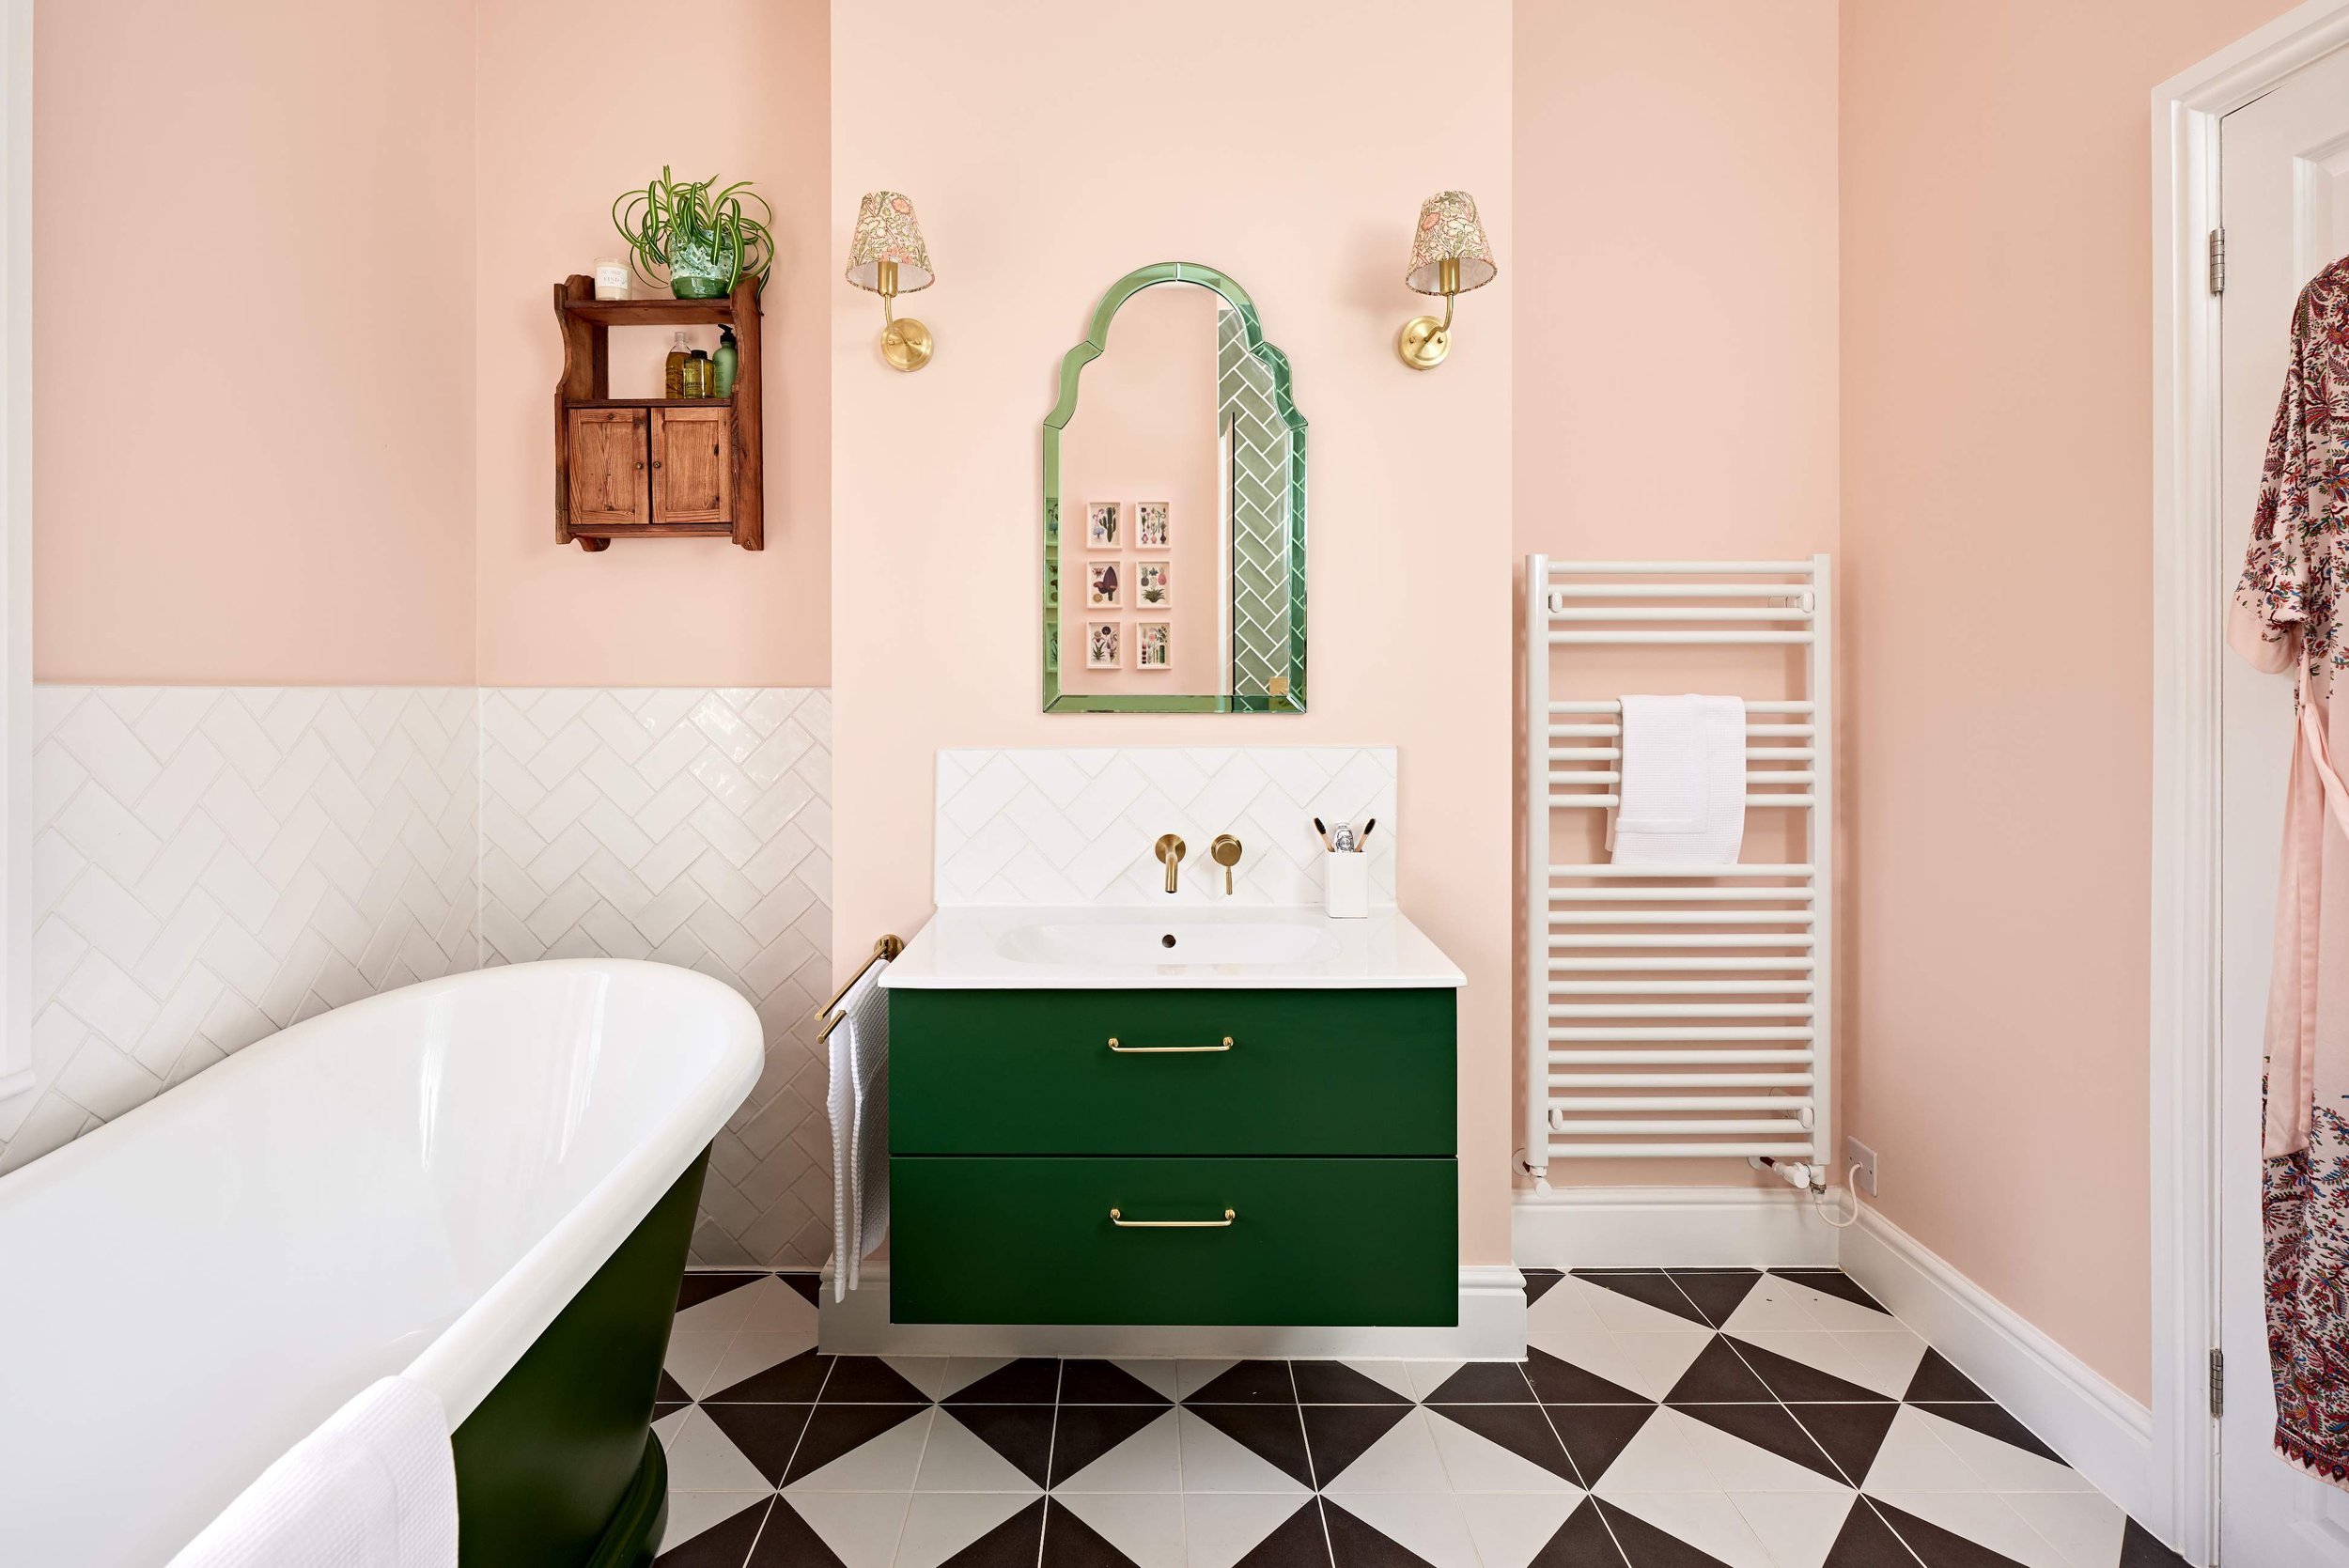 bathroom-with-green-vanity-unit-andchequerboard-floor.jpg